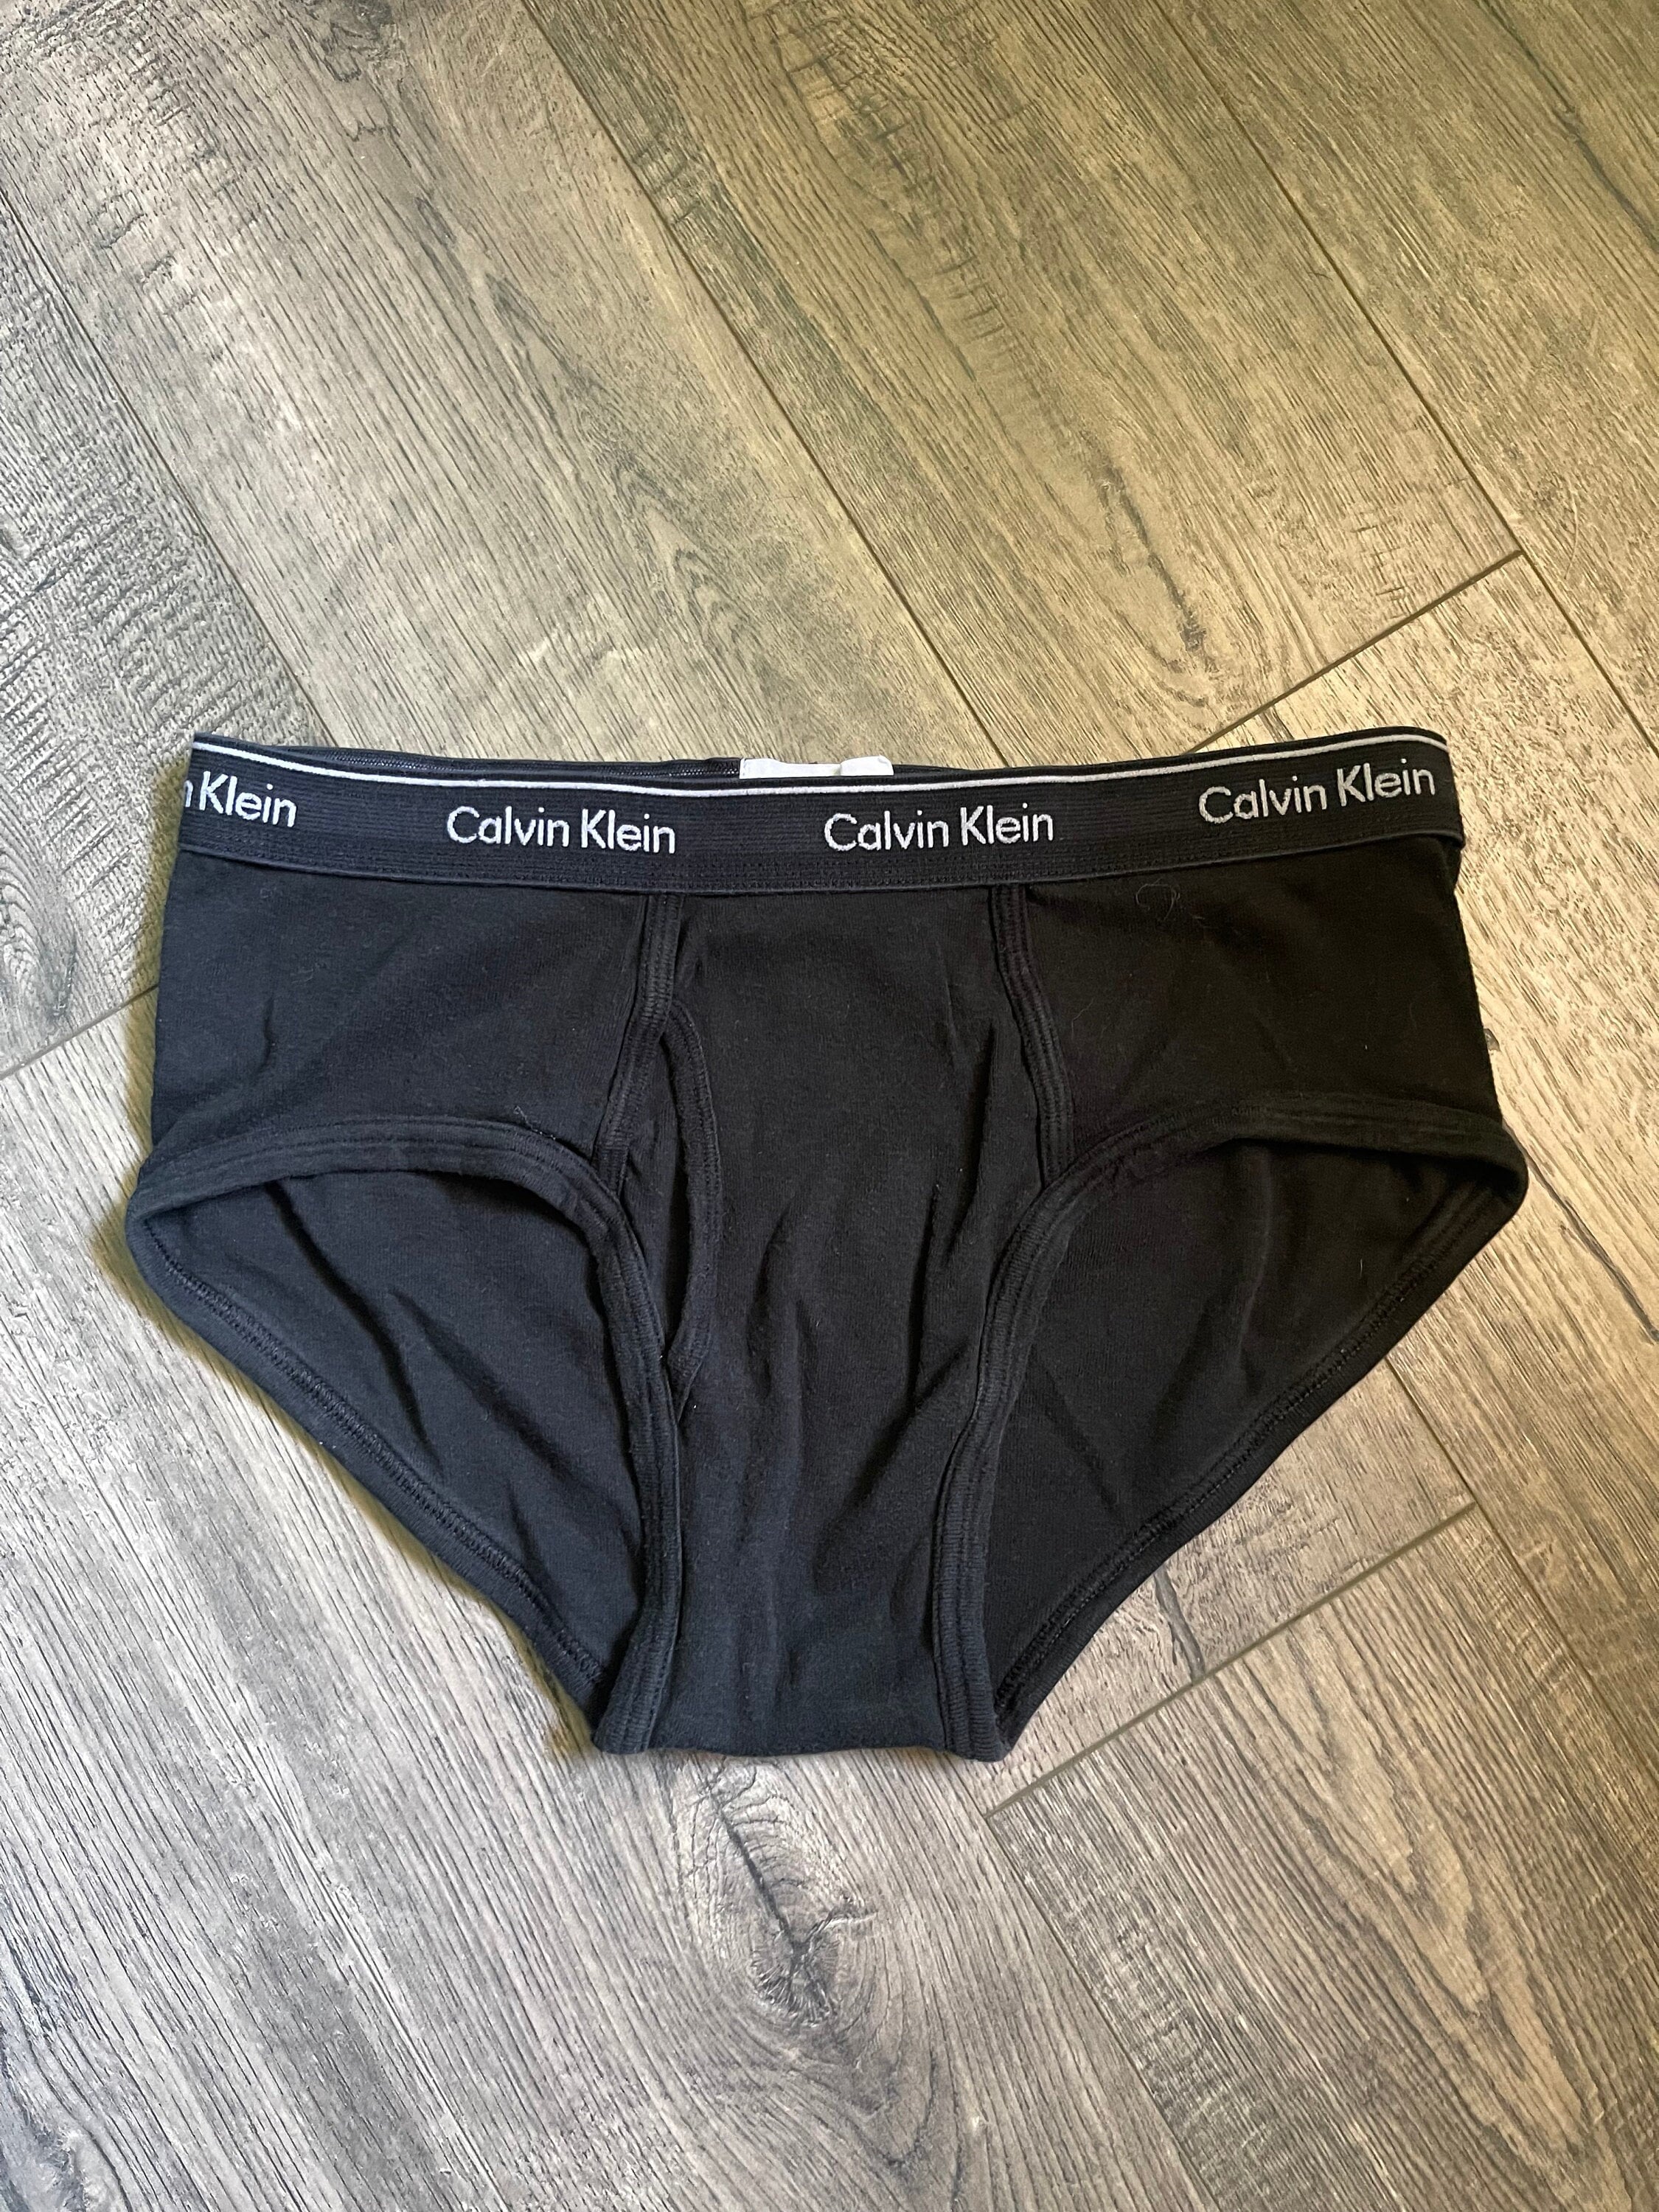 CALVIN KLEIN UNDERWEAR Calvin Klein EVOLUTION - Brief - Men's - grey sky -  Private Sport Shop